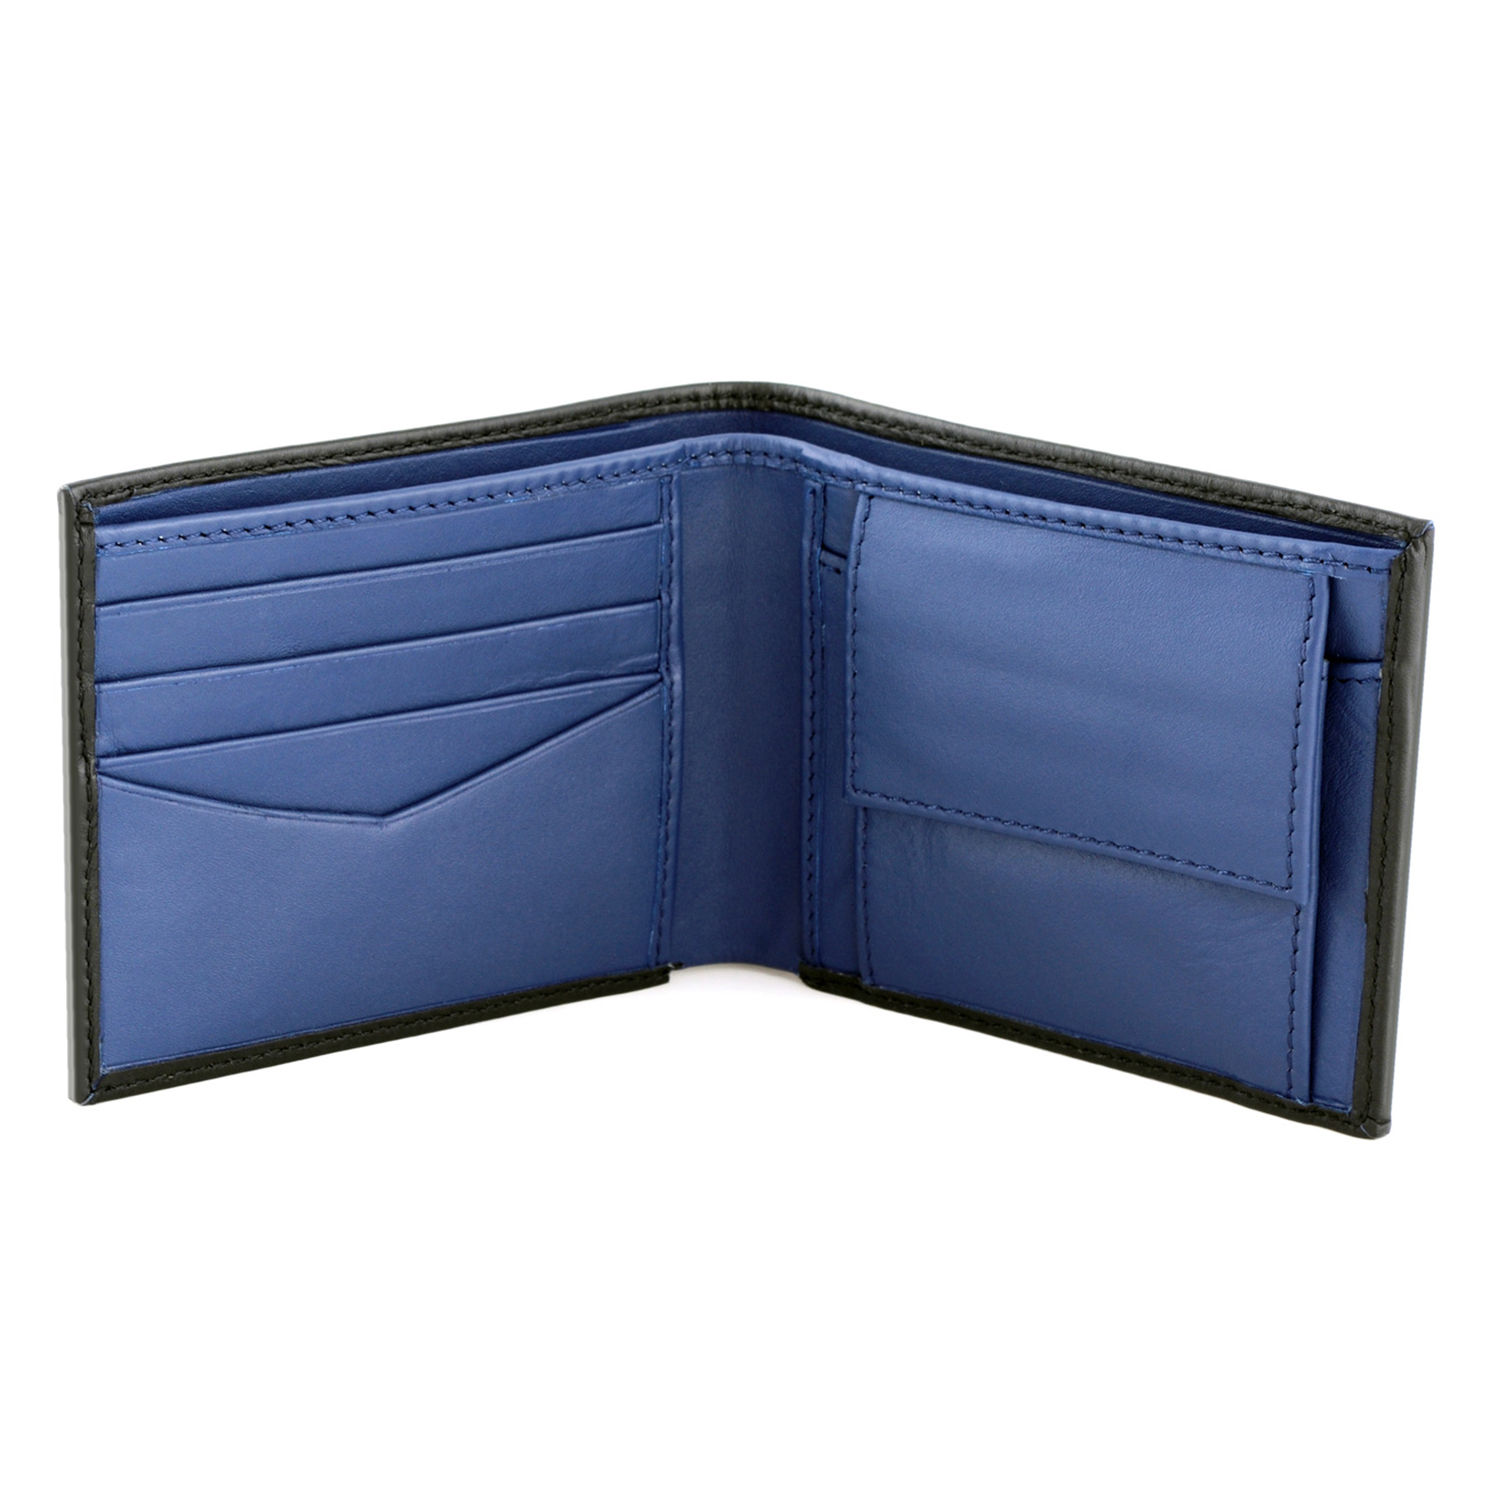 Buy/Send Tzaro Genuine Leather Wallet Black & Navy Blue Online- Ferns N ...